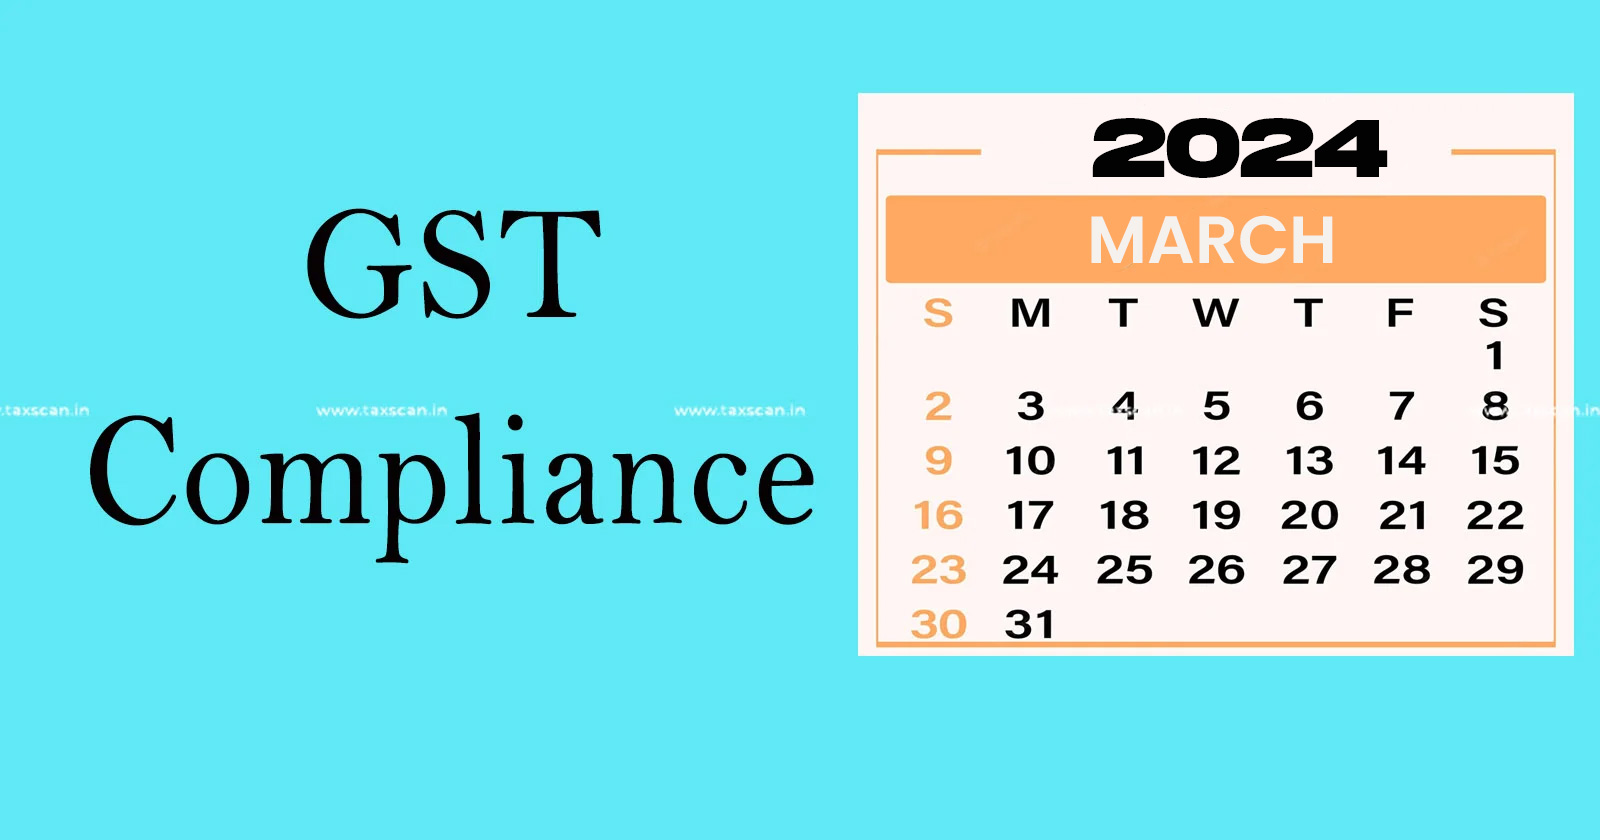 GST - March 2024 GST Filing Calendar - GST Compliance Calendar 2024 - GST Return Deadlines March 2024 - Taxscanan